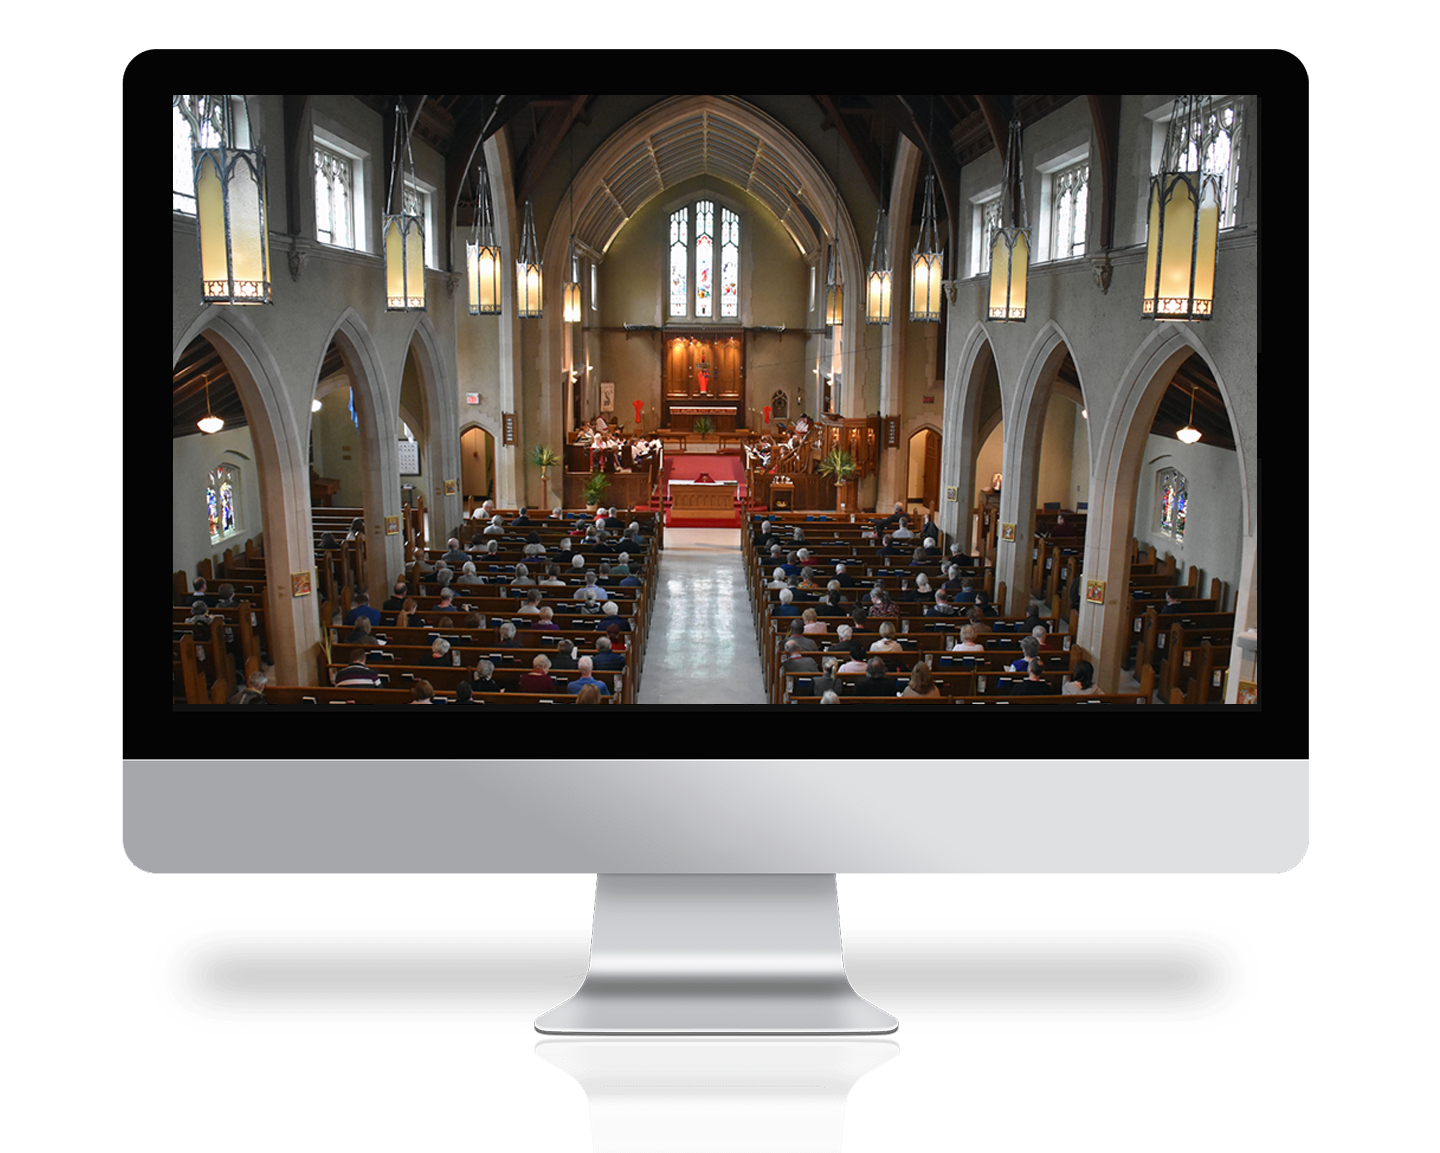 St. Matthew's church interior on a computer screen 